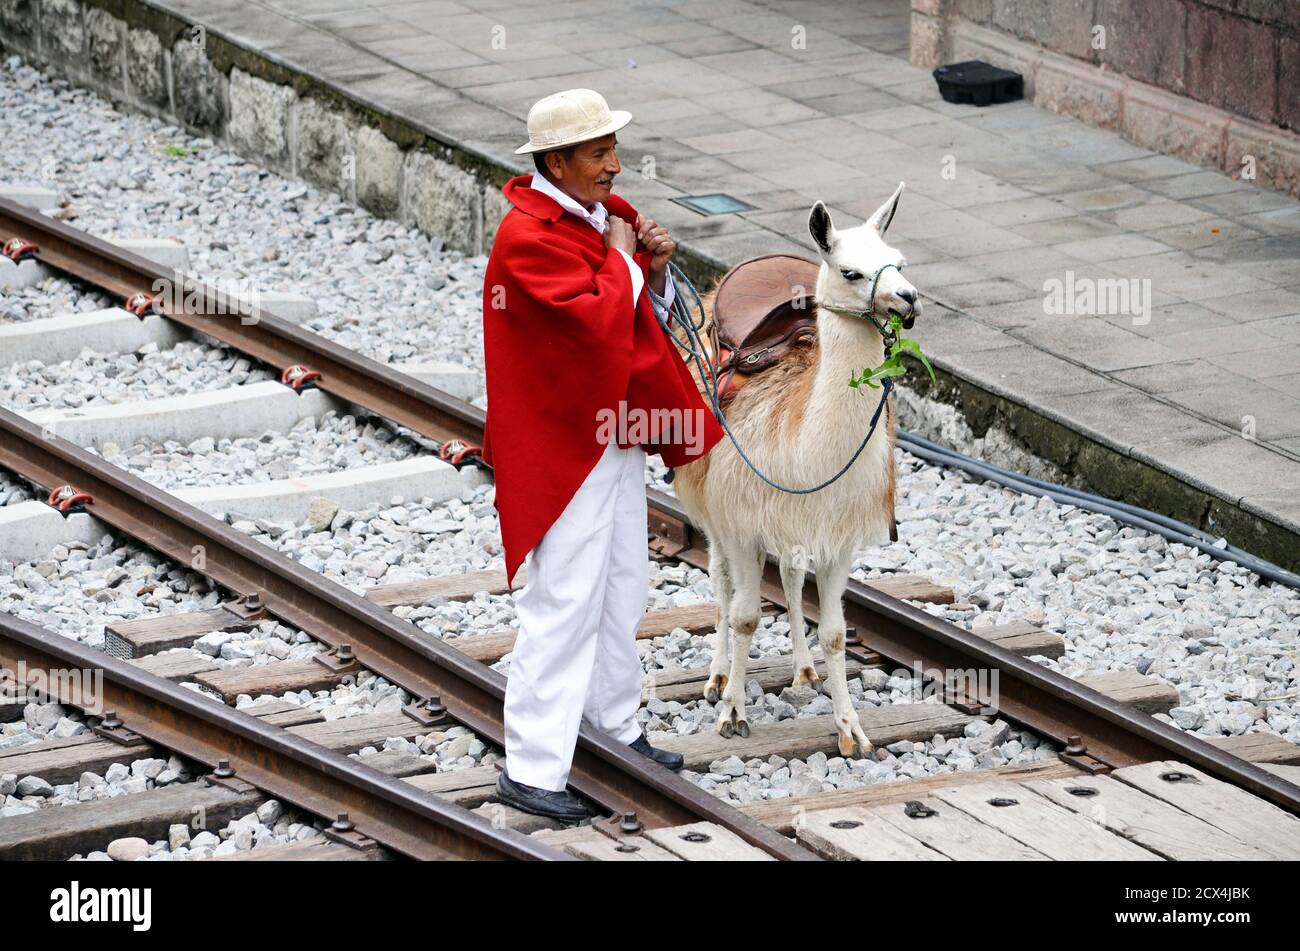 Nariz del Diablo Train Ride Stop with Man & His Llama Stock Photo